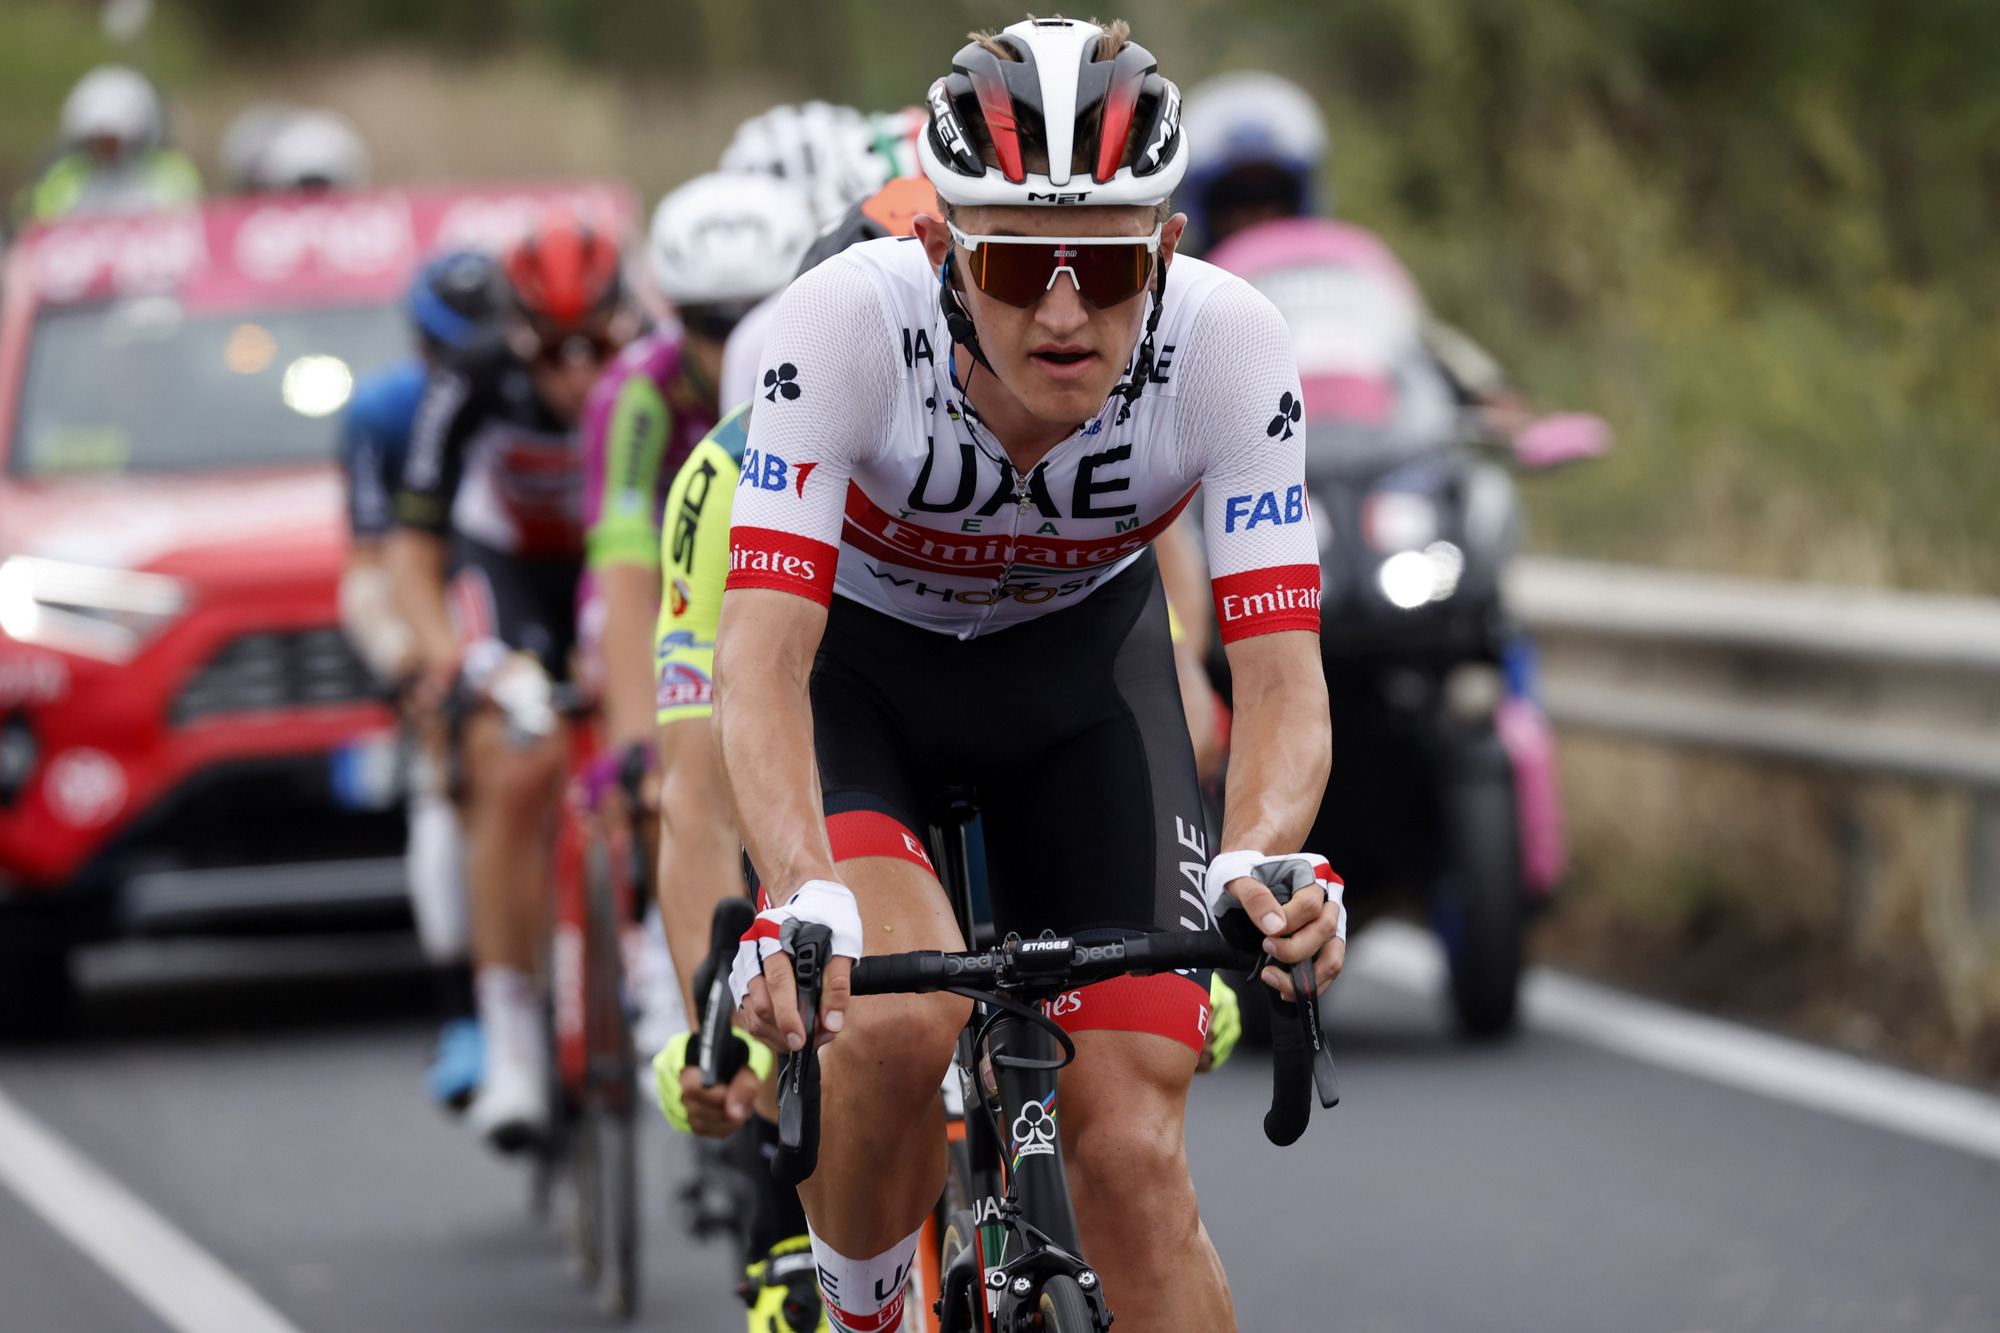 Giro d'Italia: Caicedo wins on Mount Etna as Thomas, Yates lose ground ...